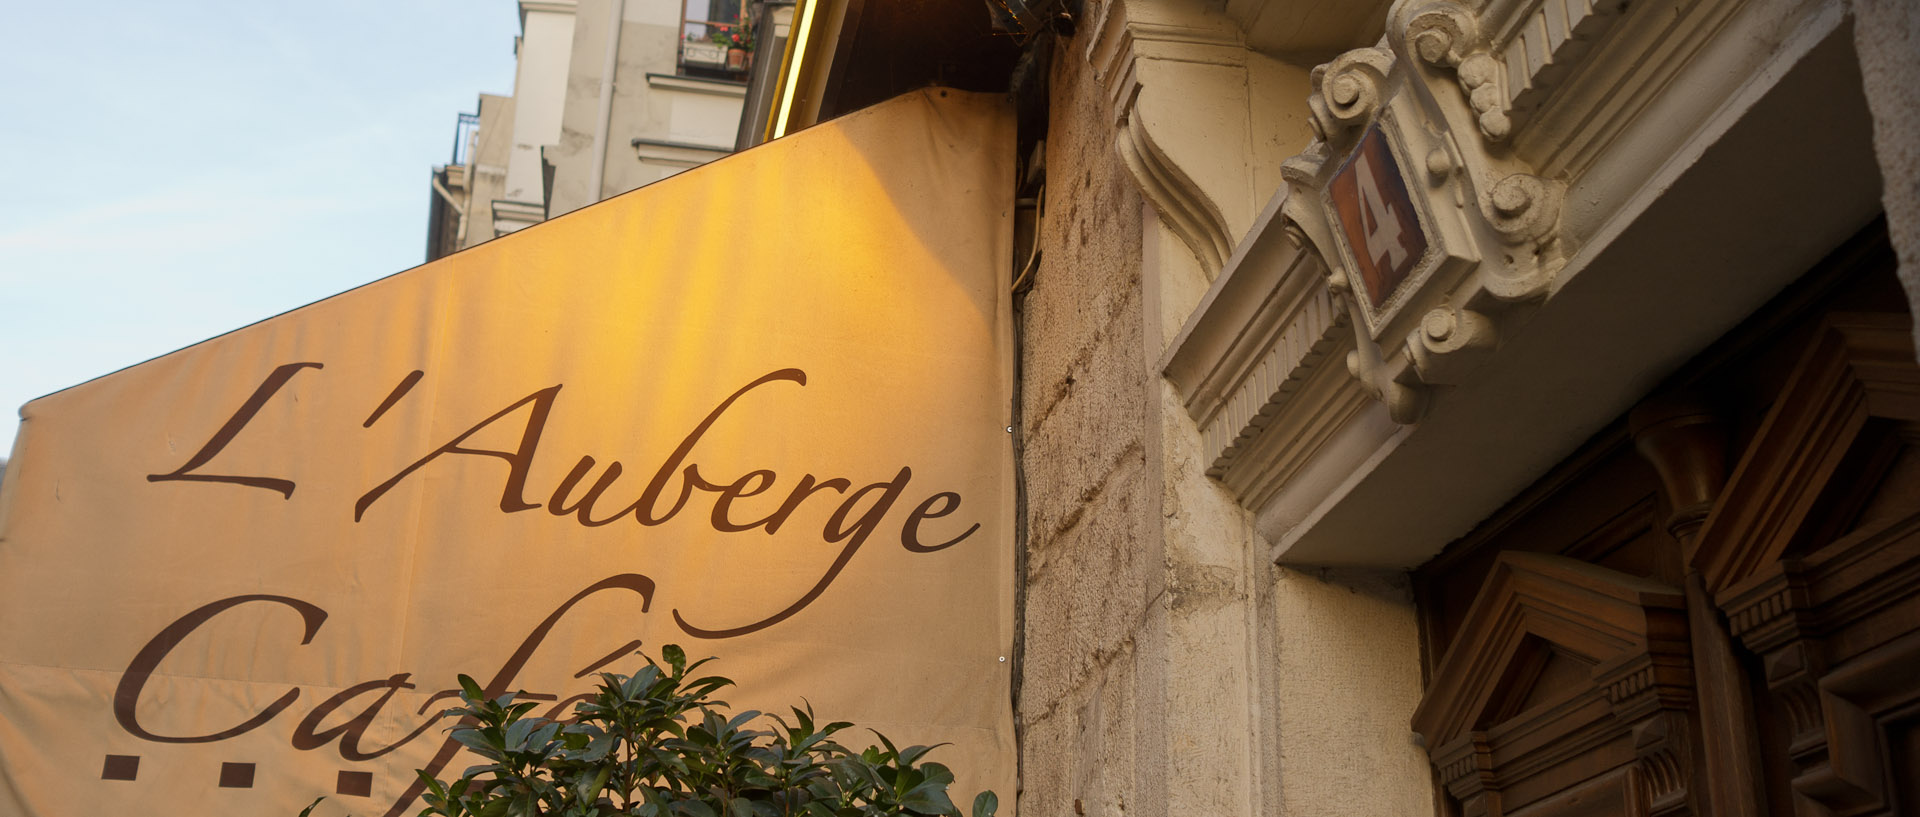 L'Auberge café, rue Bertin-Poirée, à Paris.